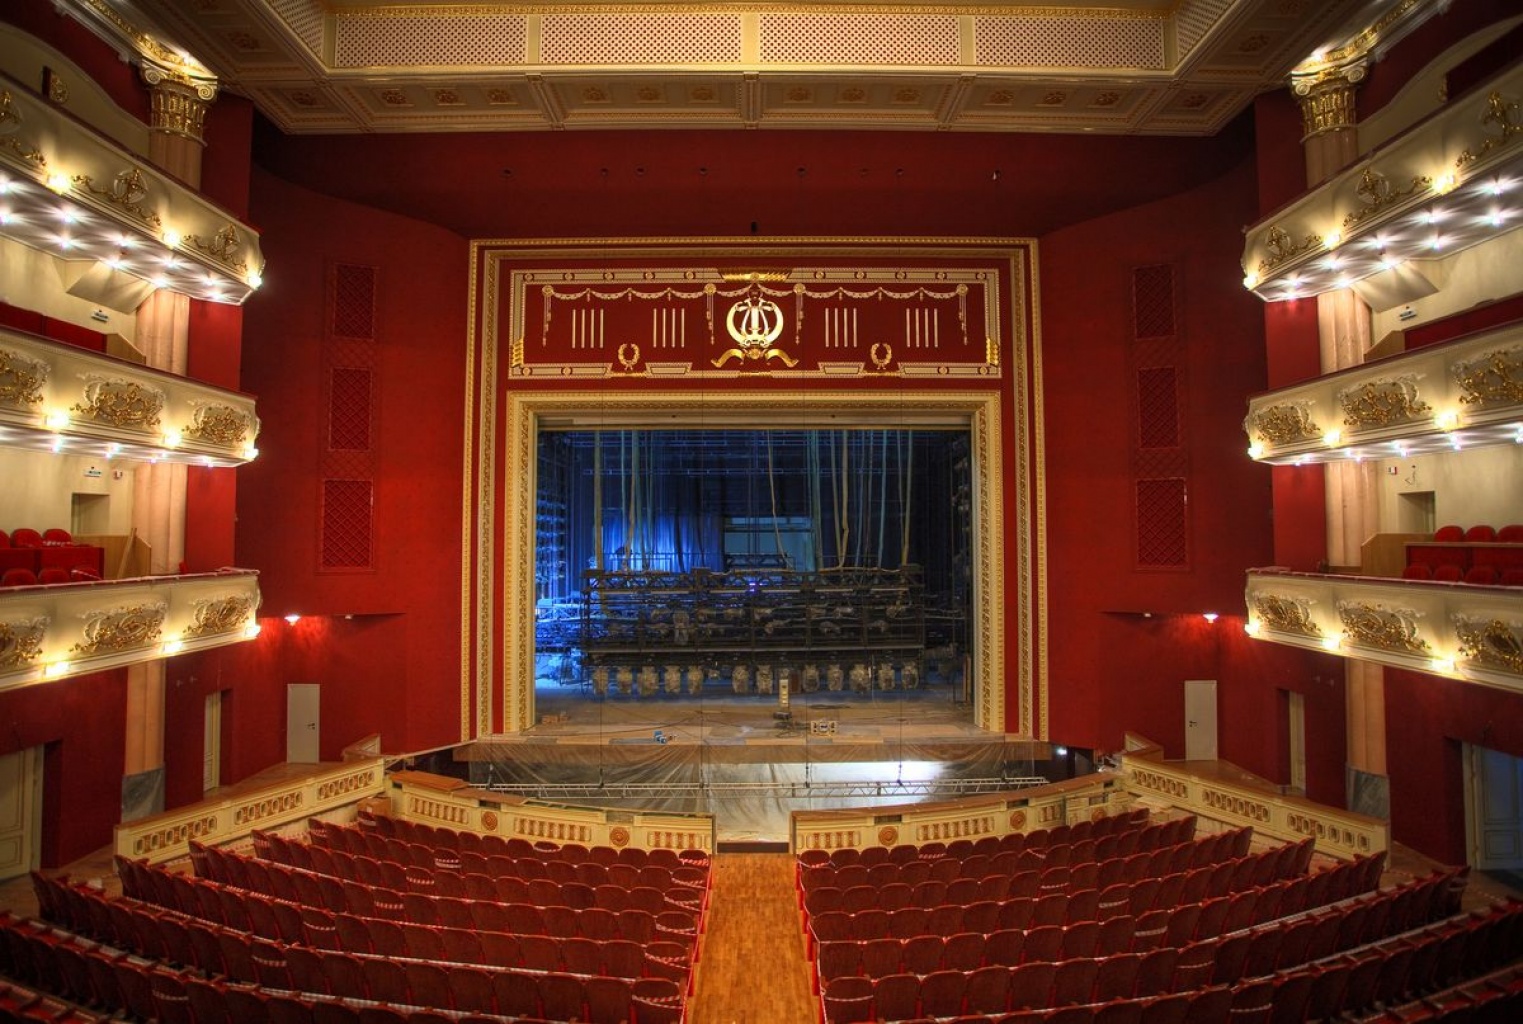 театр оперы и балета челябинск расположение мест в зале